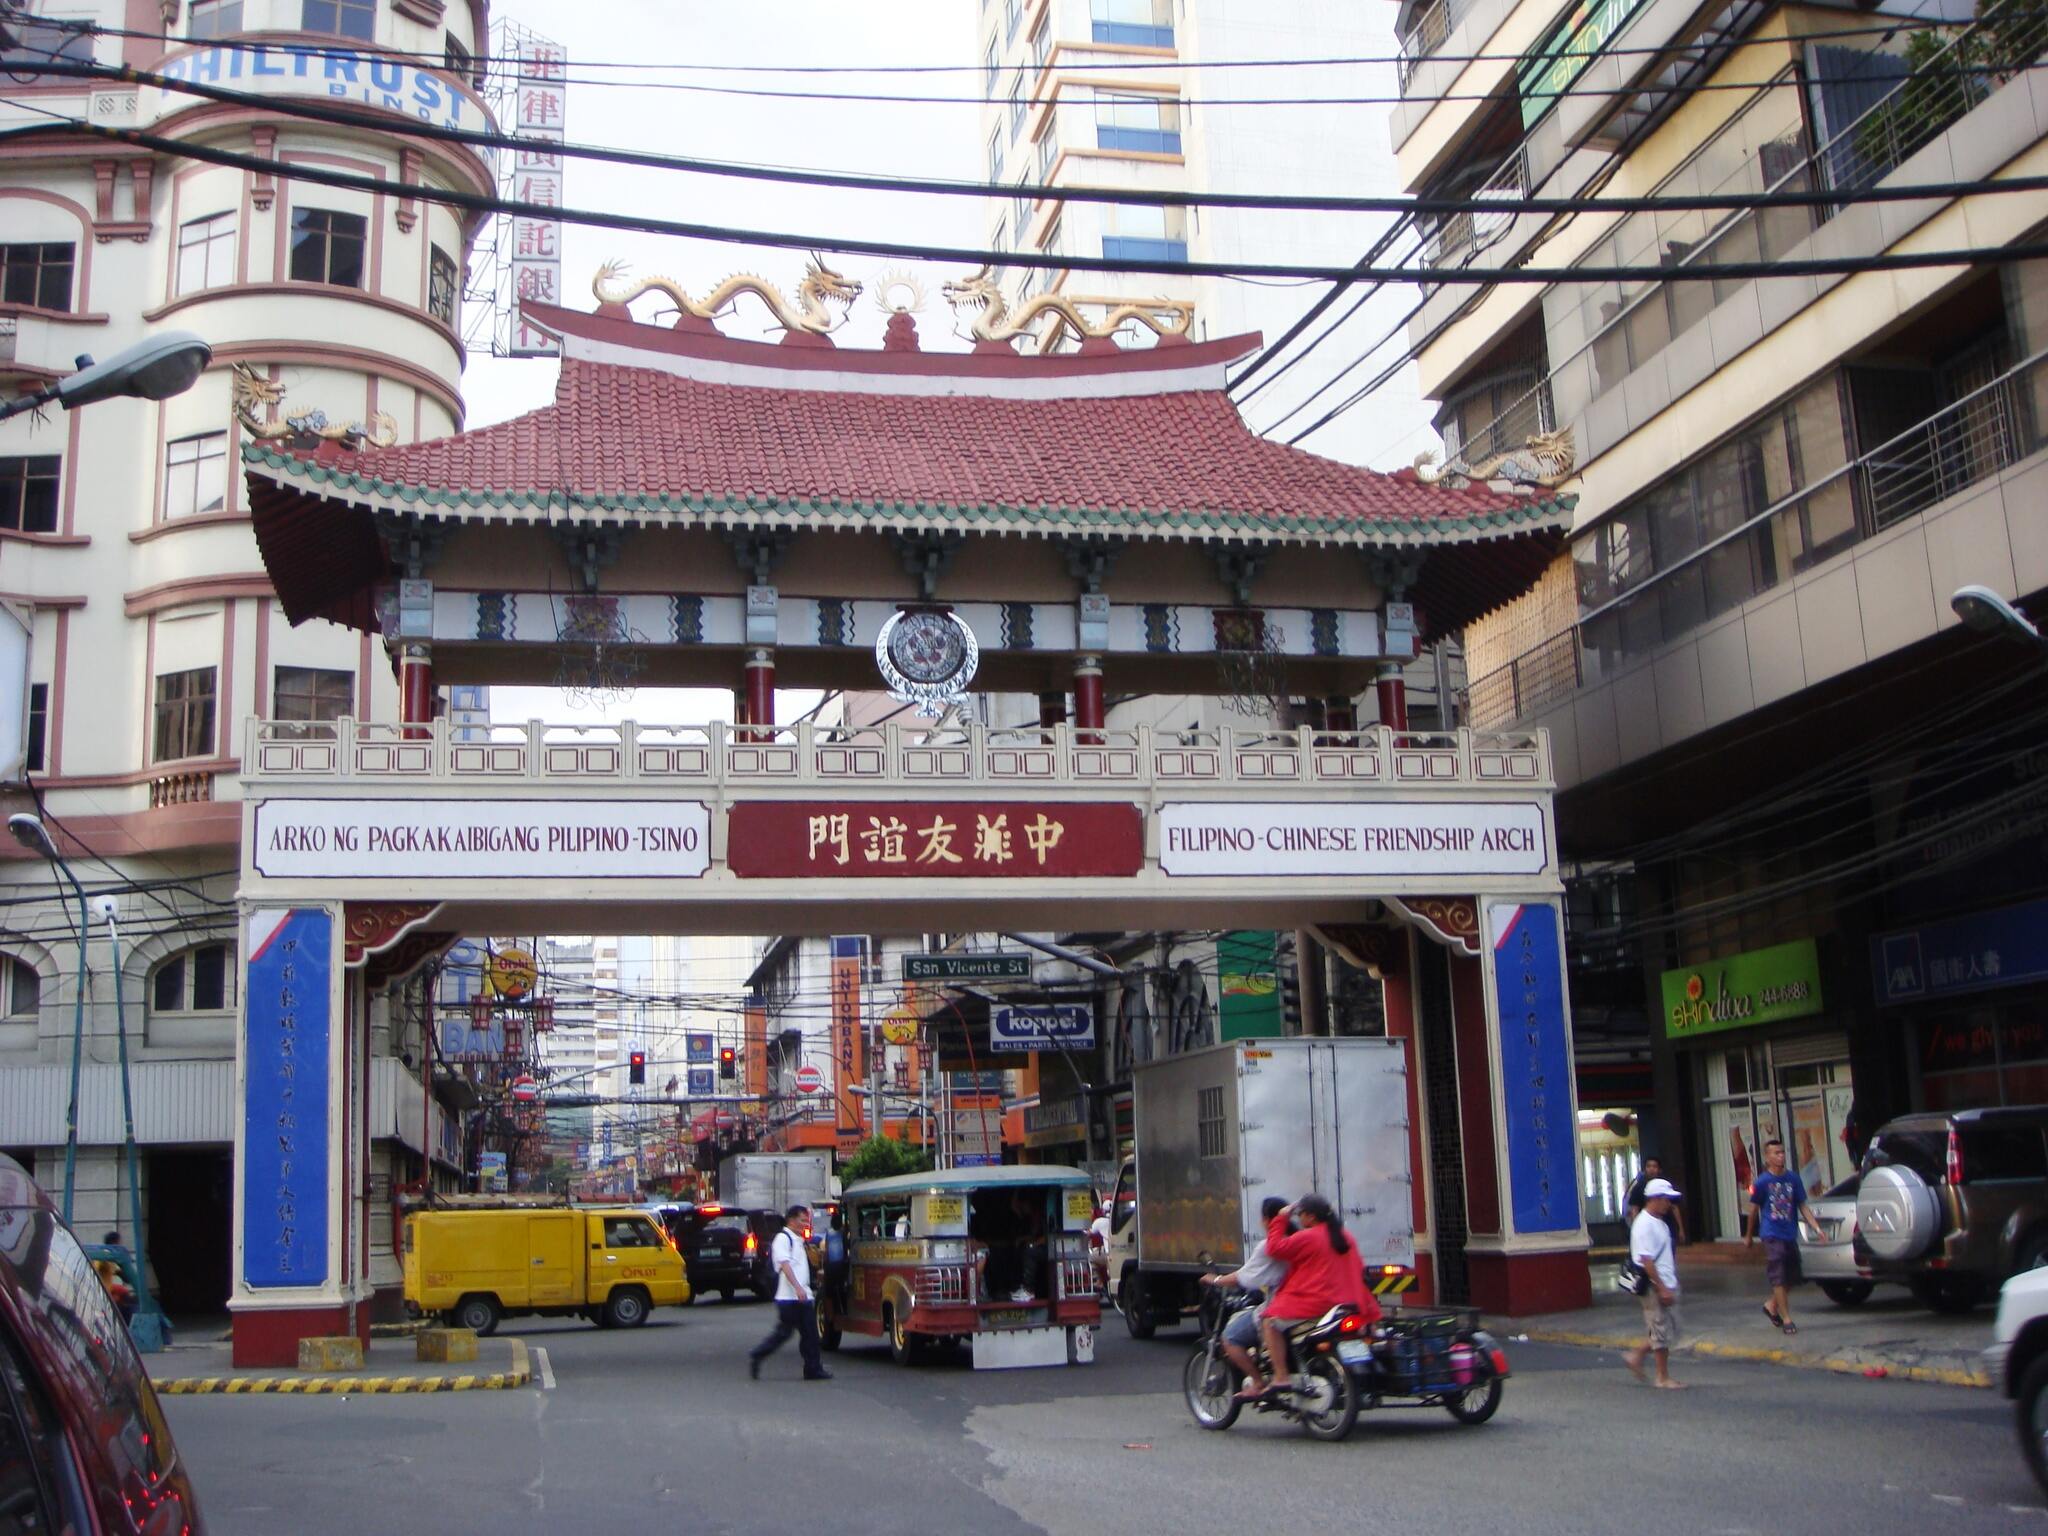 Arko ng Pagkakaibigang Pilipino-Tsino (Filipino-Chinese Friendship Arch at Binondo)